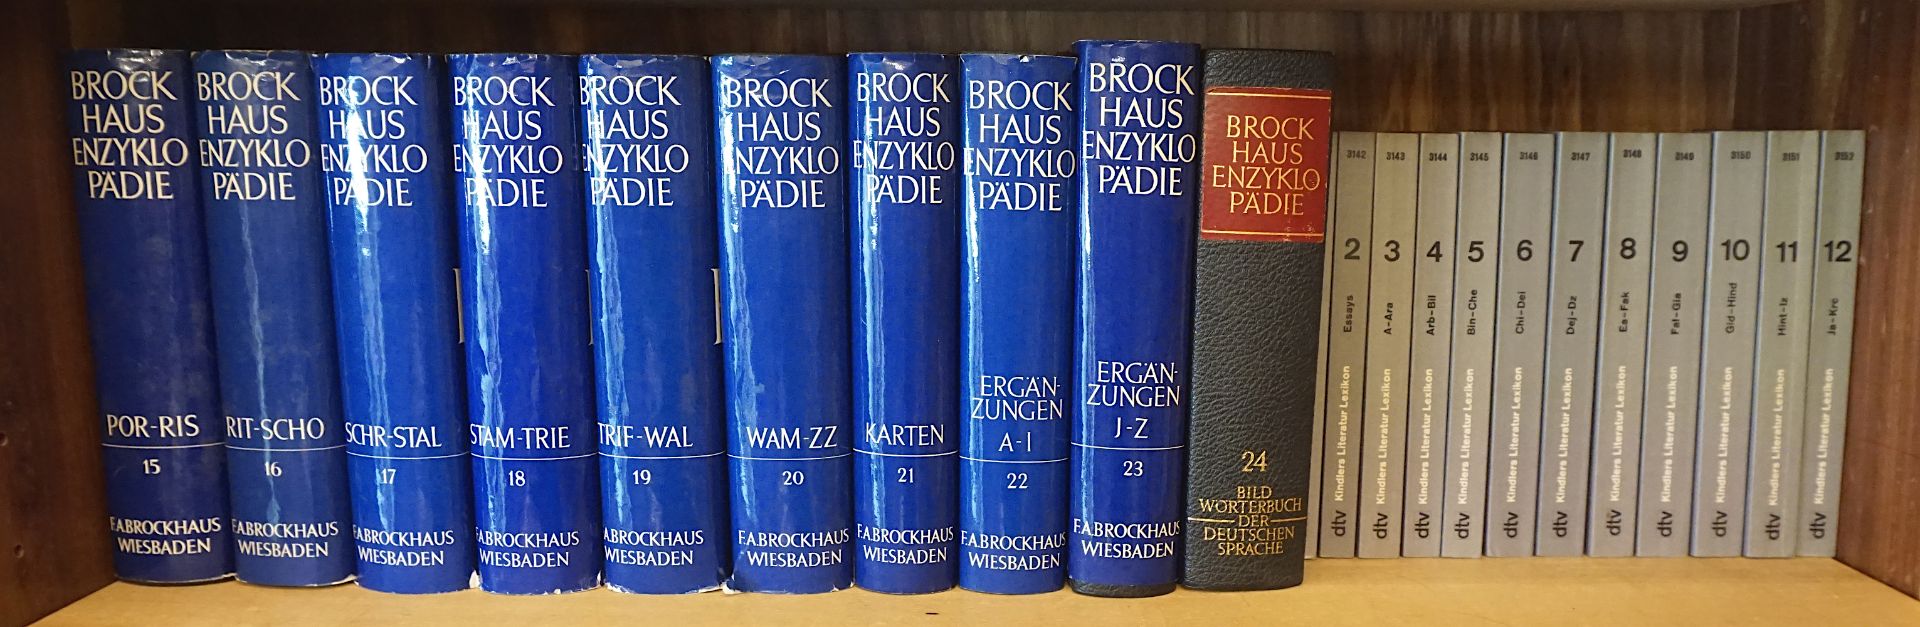 1 Enzyklopädie "BROCKHAUS" in 20 Bänden Wiesbaden 1968 - Bild 3 aus 4